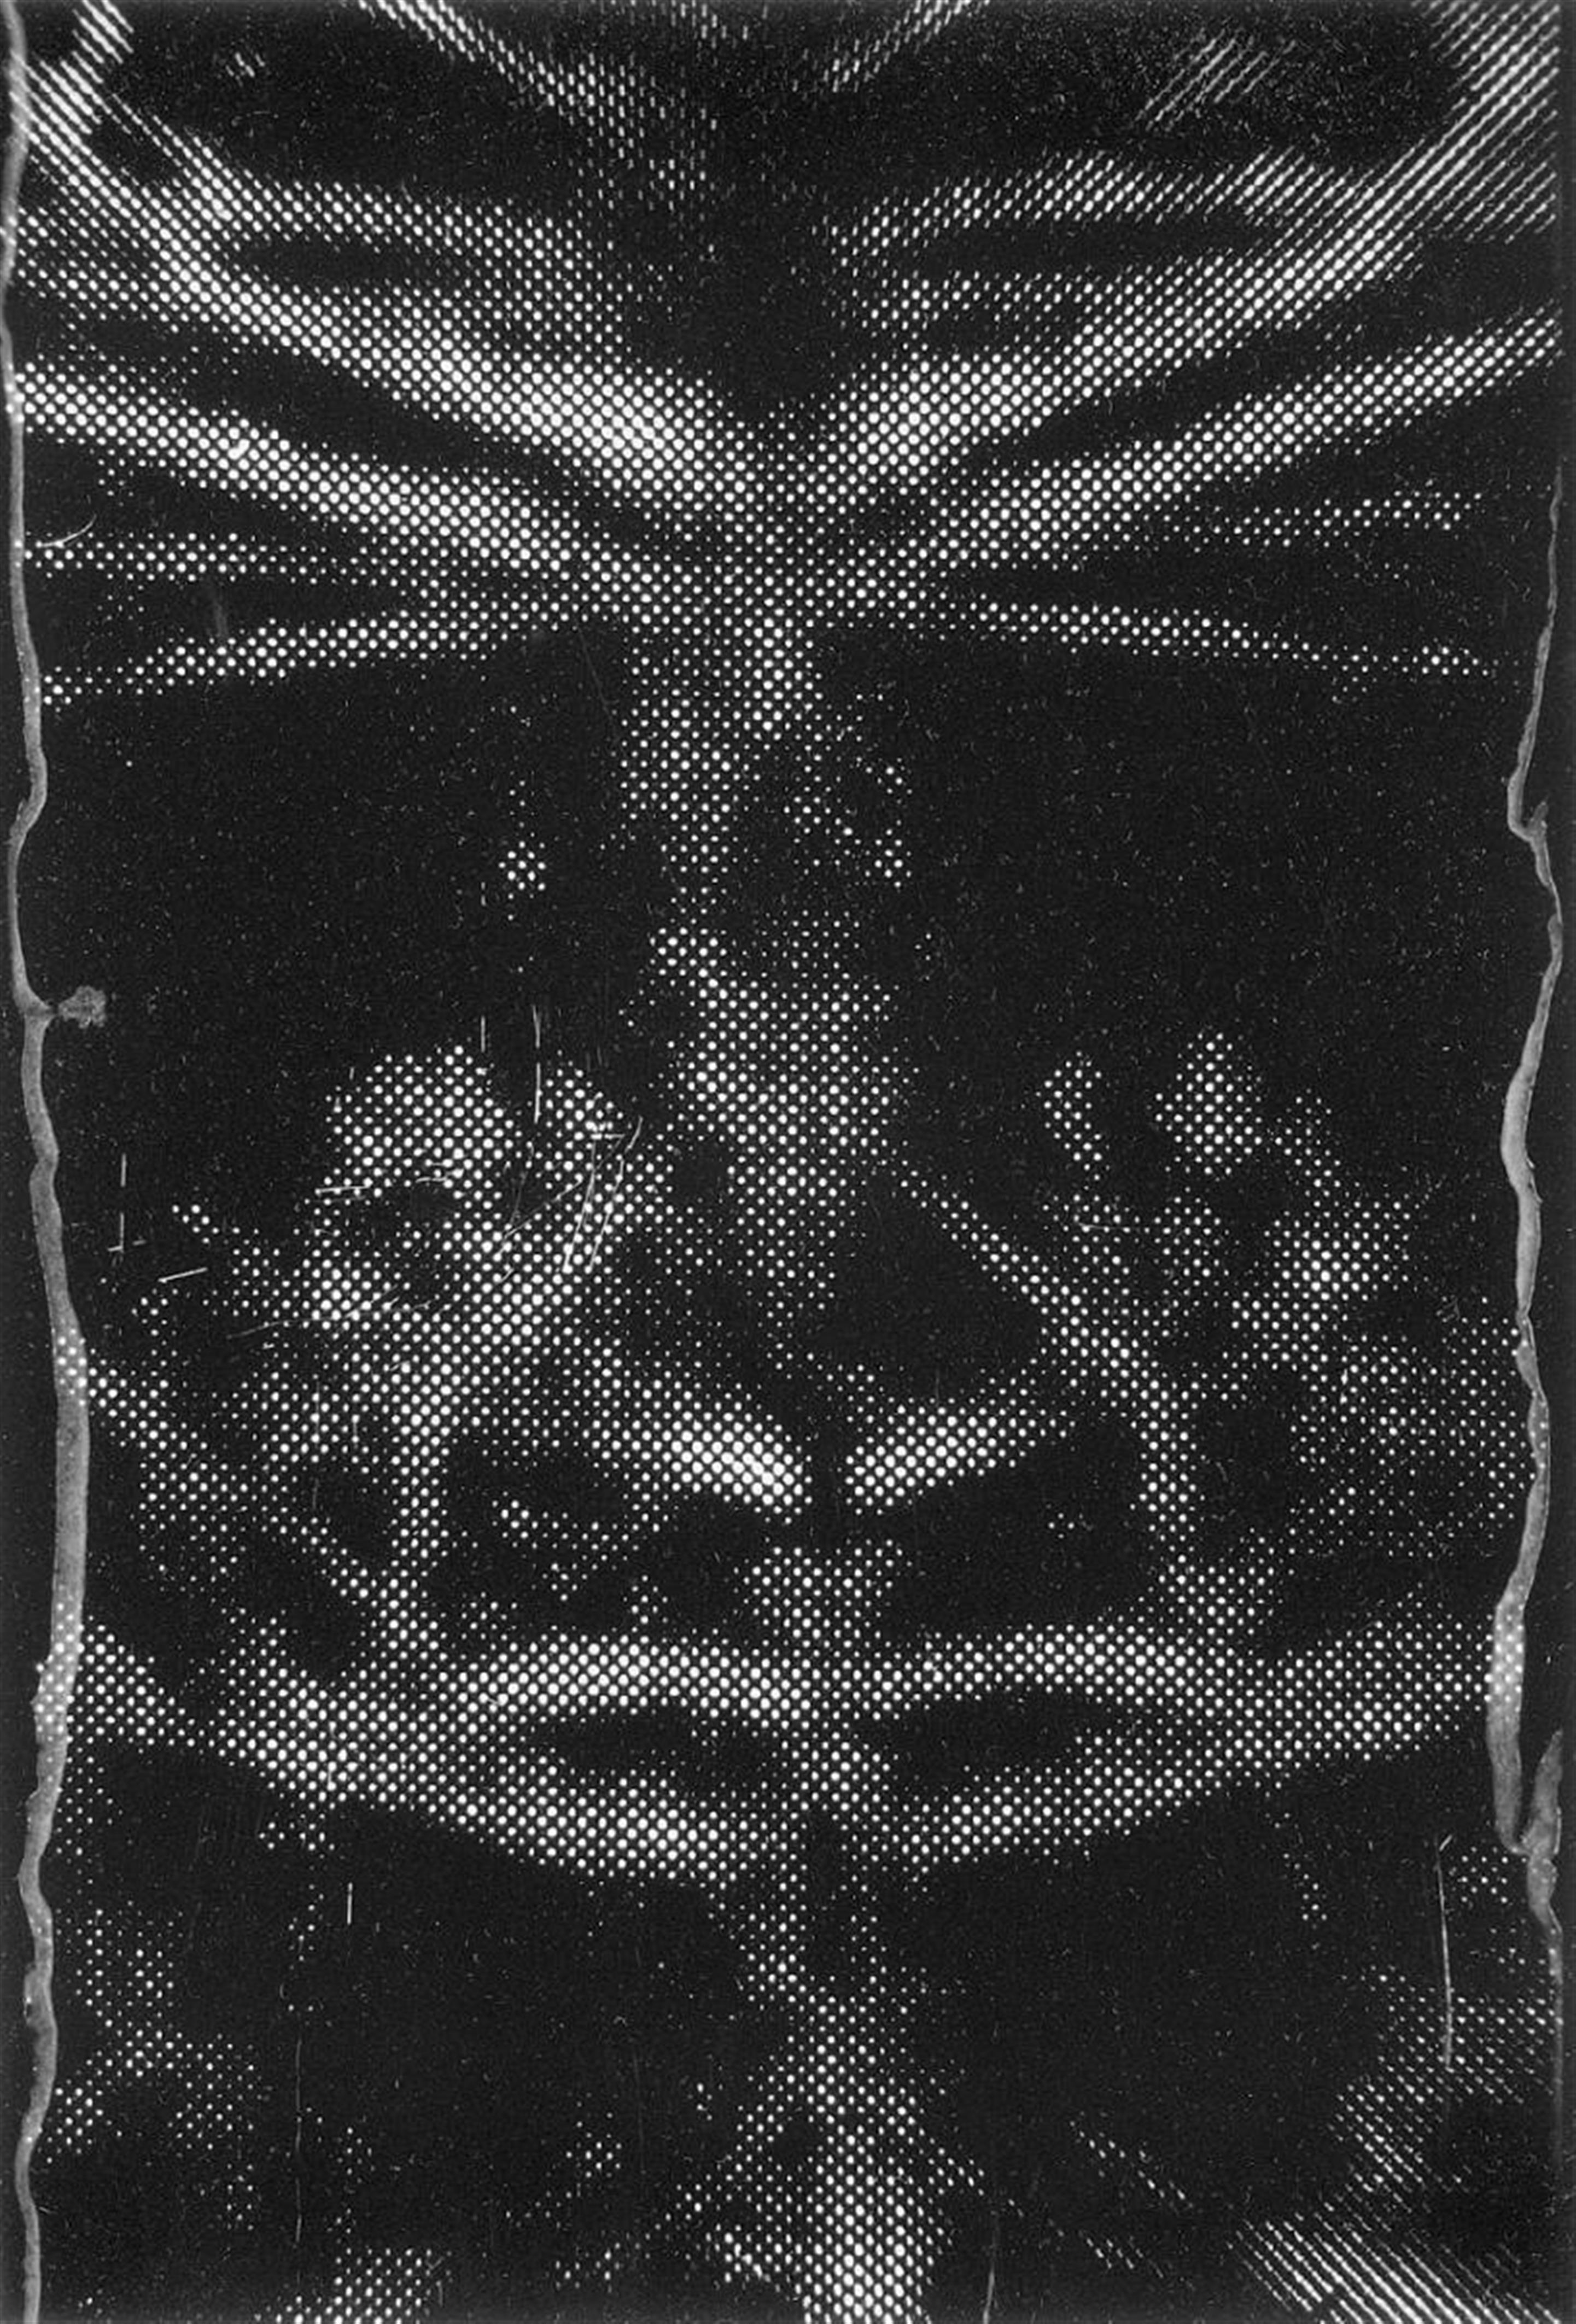 Sigmar Polke - Ohne Titel (Spiegelung III) - image-1